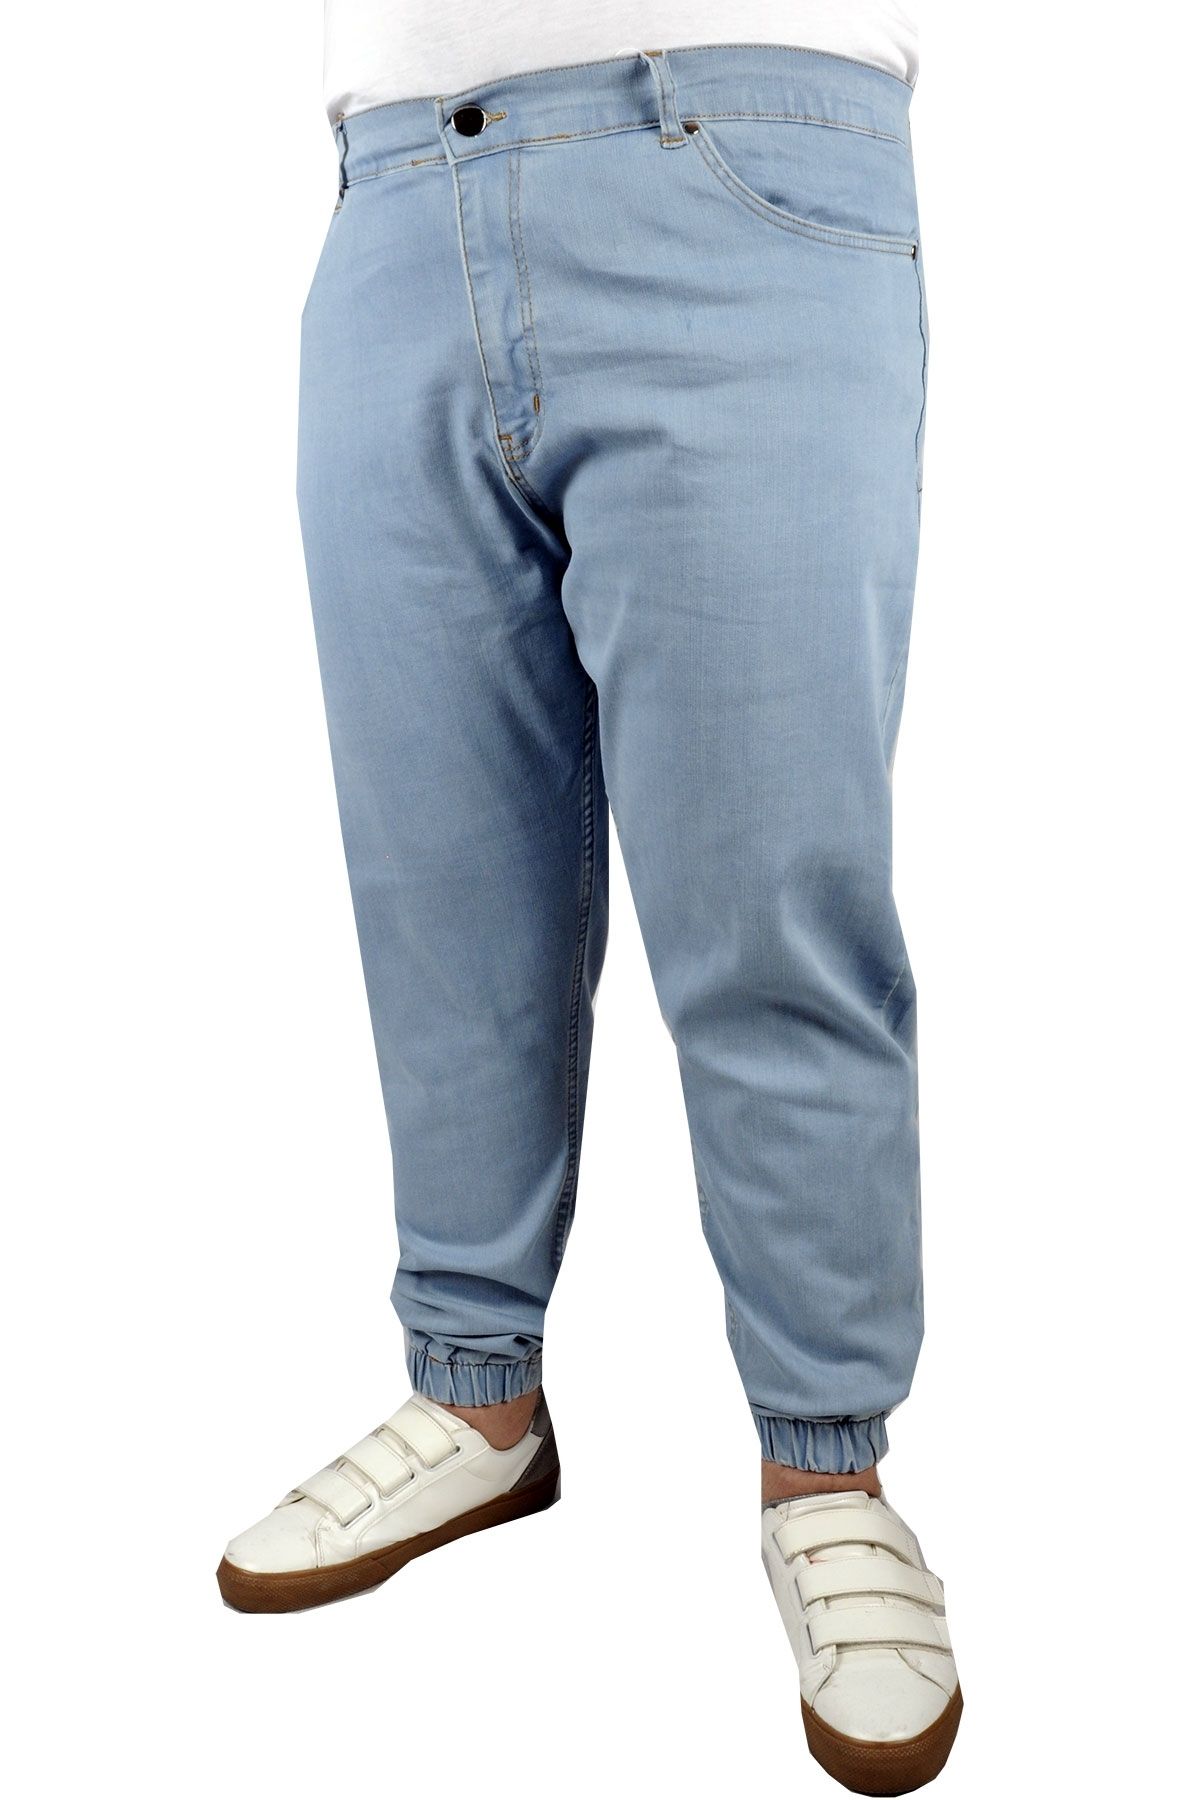 Modexl Mode Xl Erkek Kot Pantolon Jogger 21919 Mavi